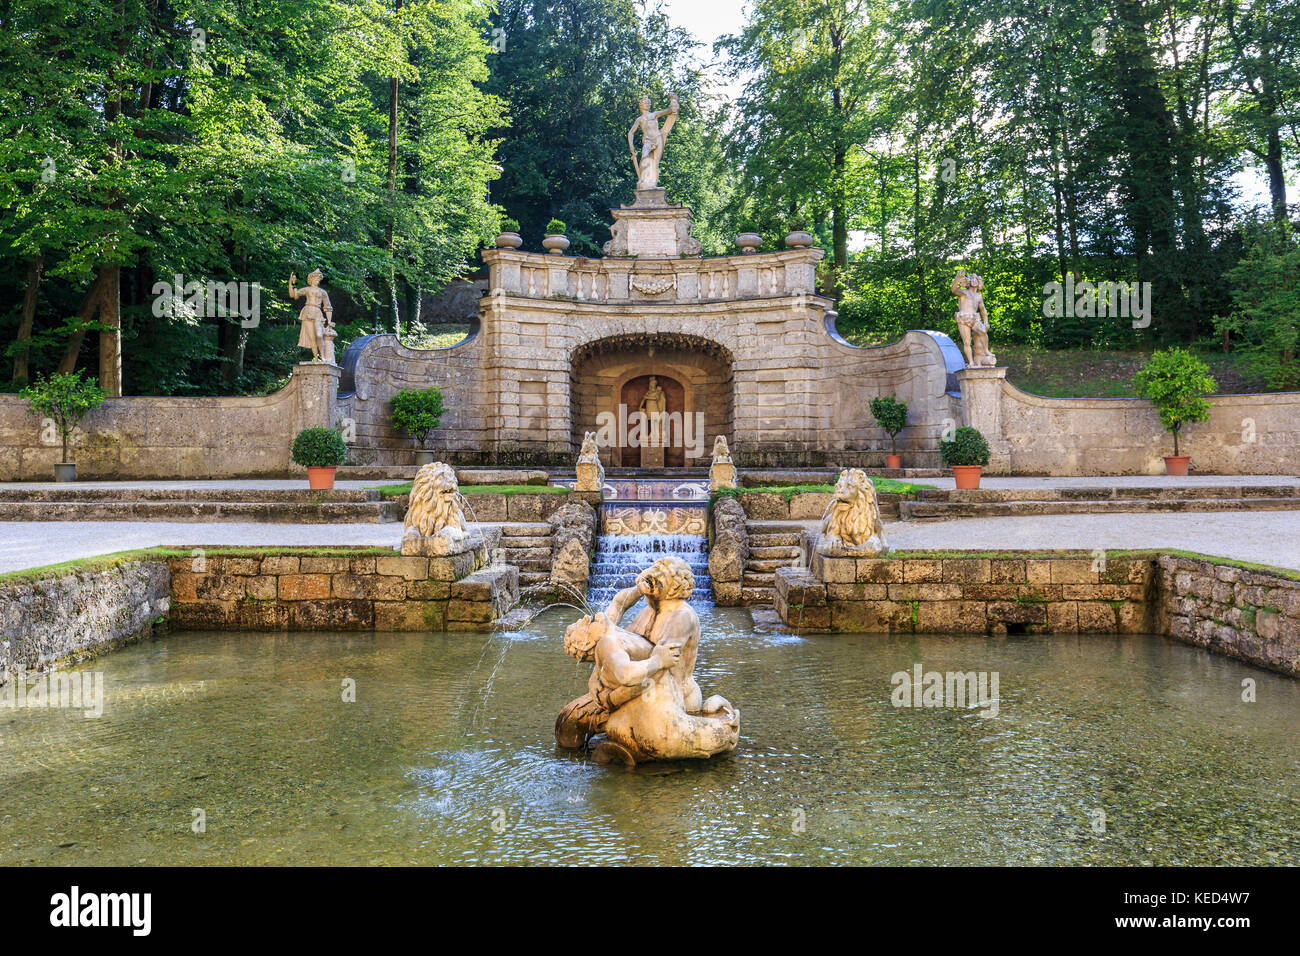 Fontaines de Hellbrunn, Palais de Hellbrunn, Salzbourg, Autriche Banque D'Images